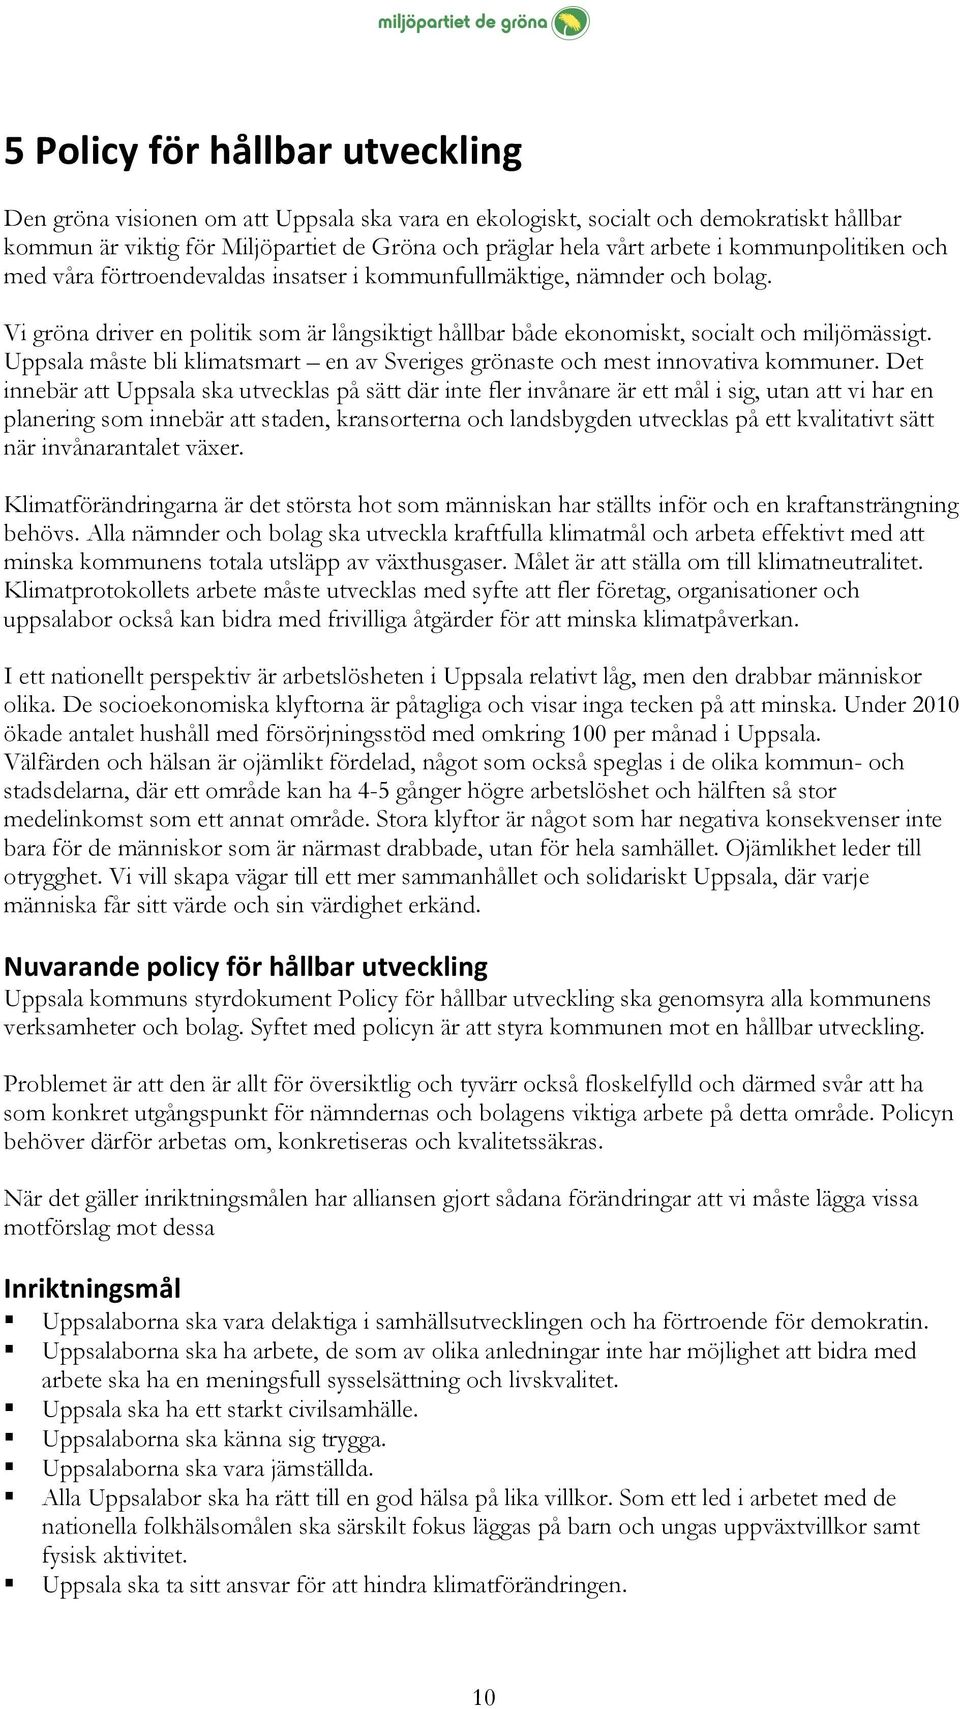 Uppsala måste bli klimatsmart en av Sveriges grönaste och mest innovativa kommuner.